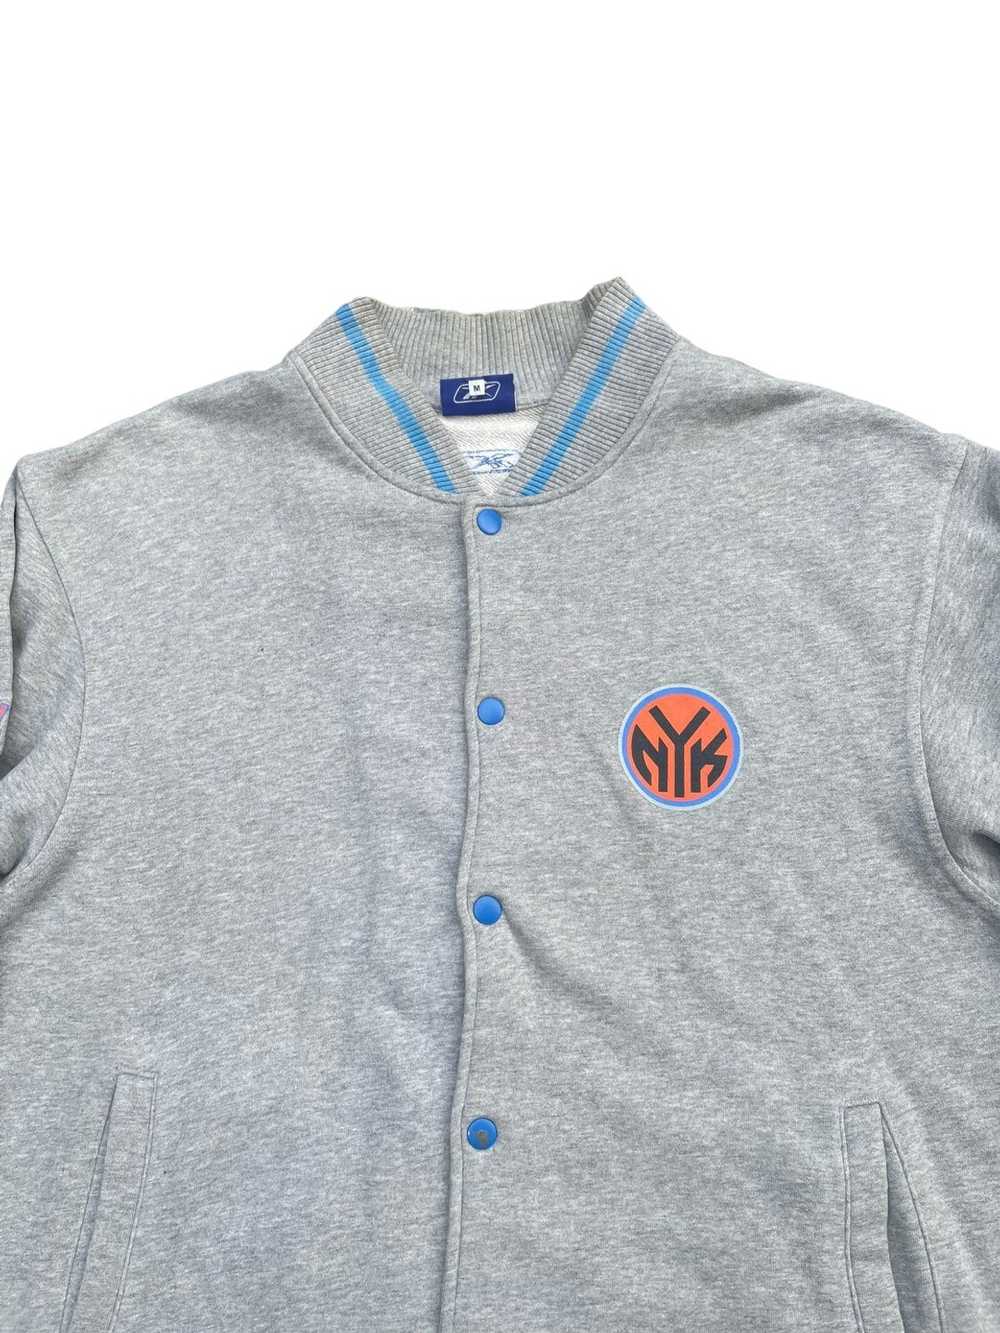 NBA × New York × Reebok Reebok New York Knicks Bu… - image 3